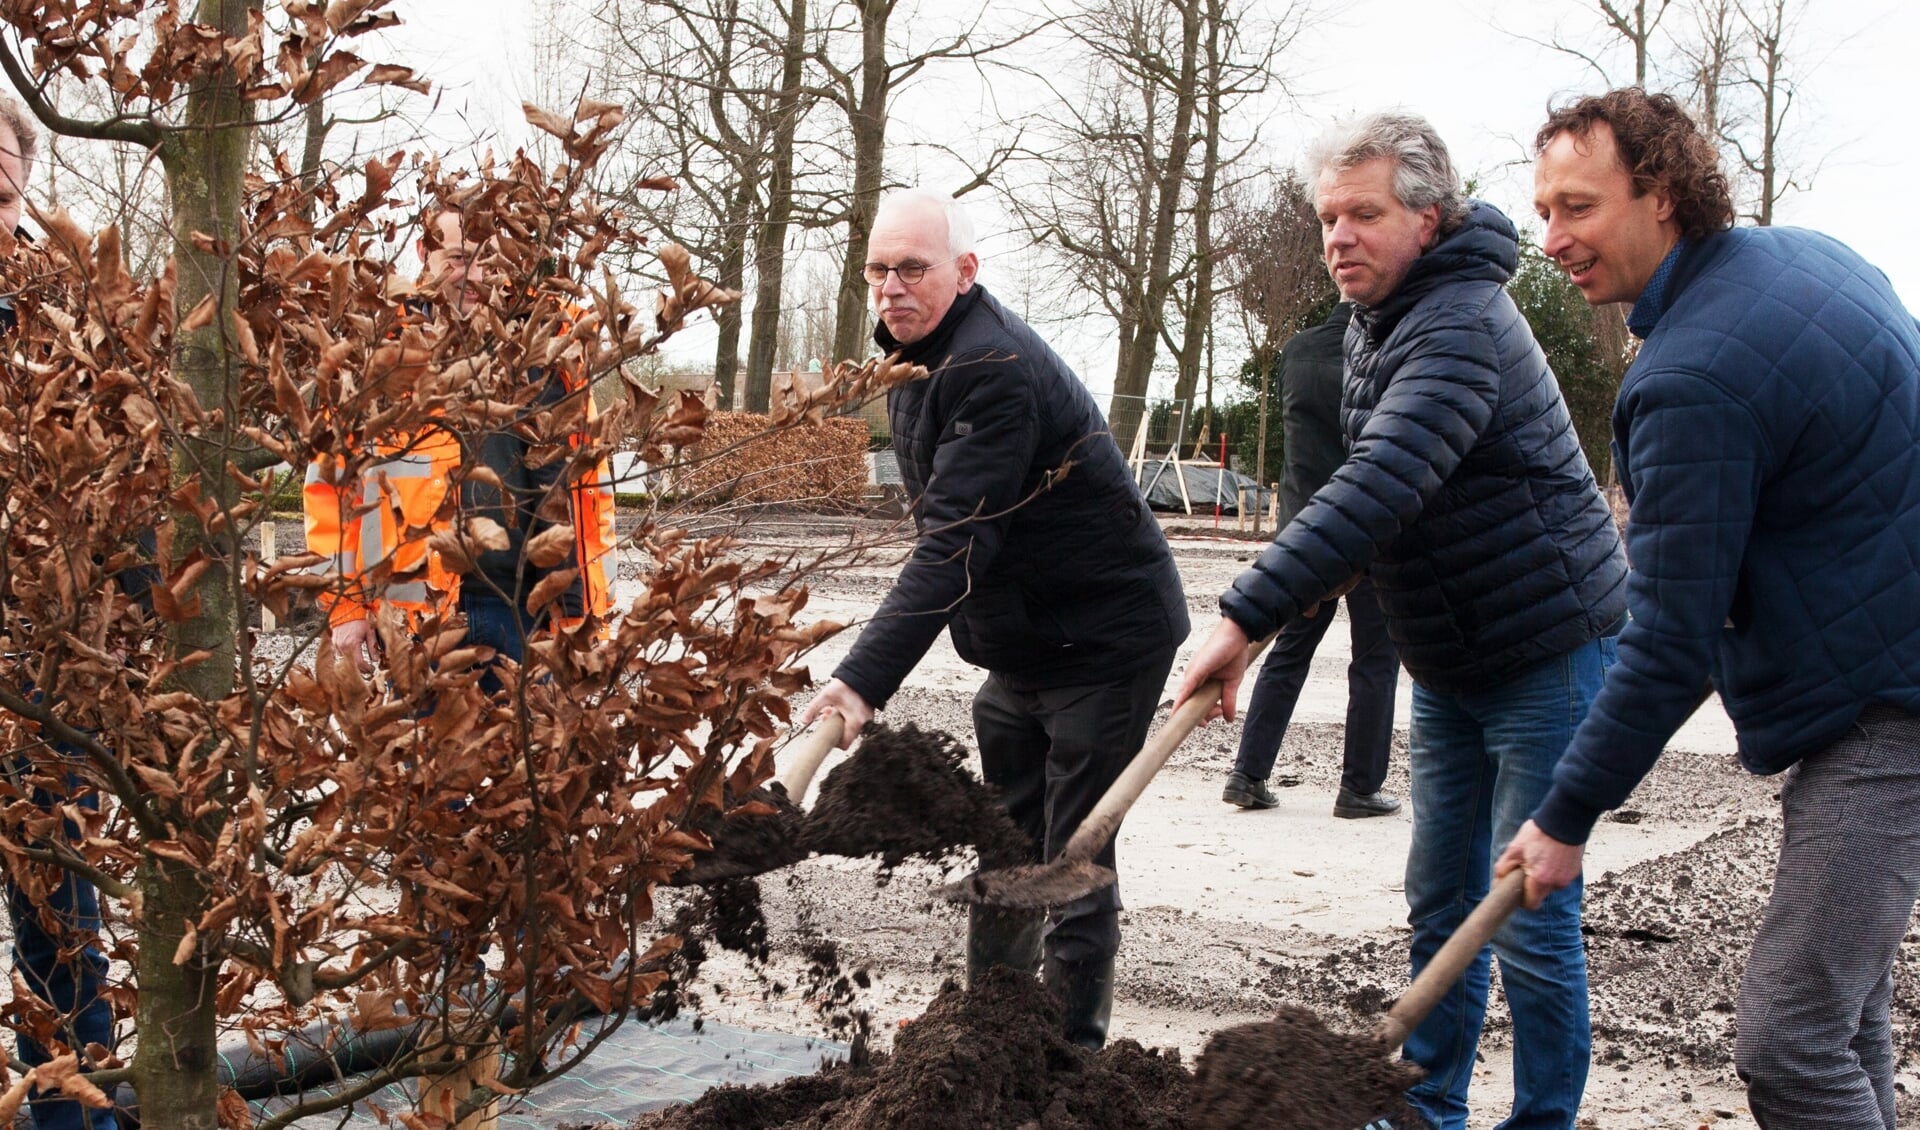 Wethouder Kees Oskam plant, samen met de veretgenwoordigers van de vroegere grondeigenaren Ard Op 't Landt (rechts) en Kees Bakker, de eerste boom